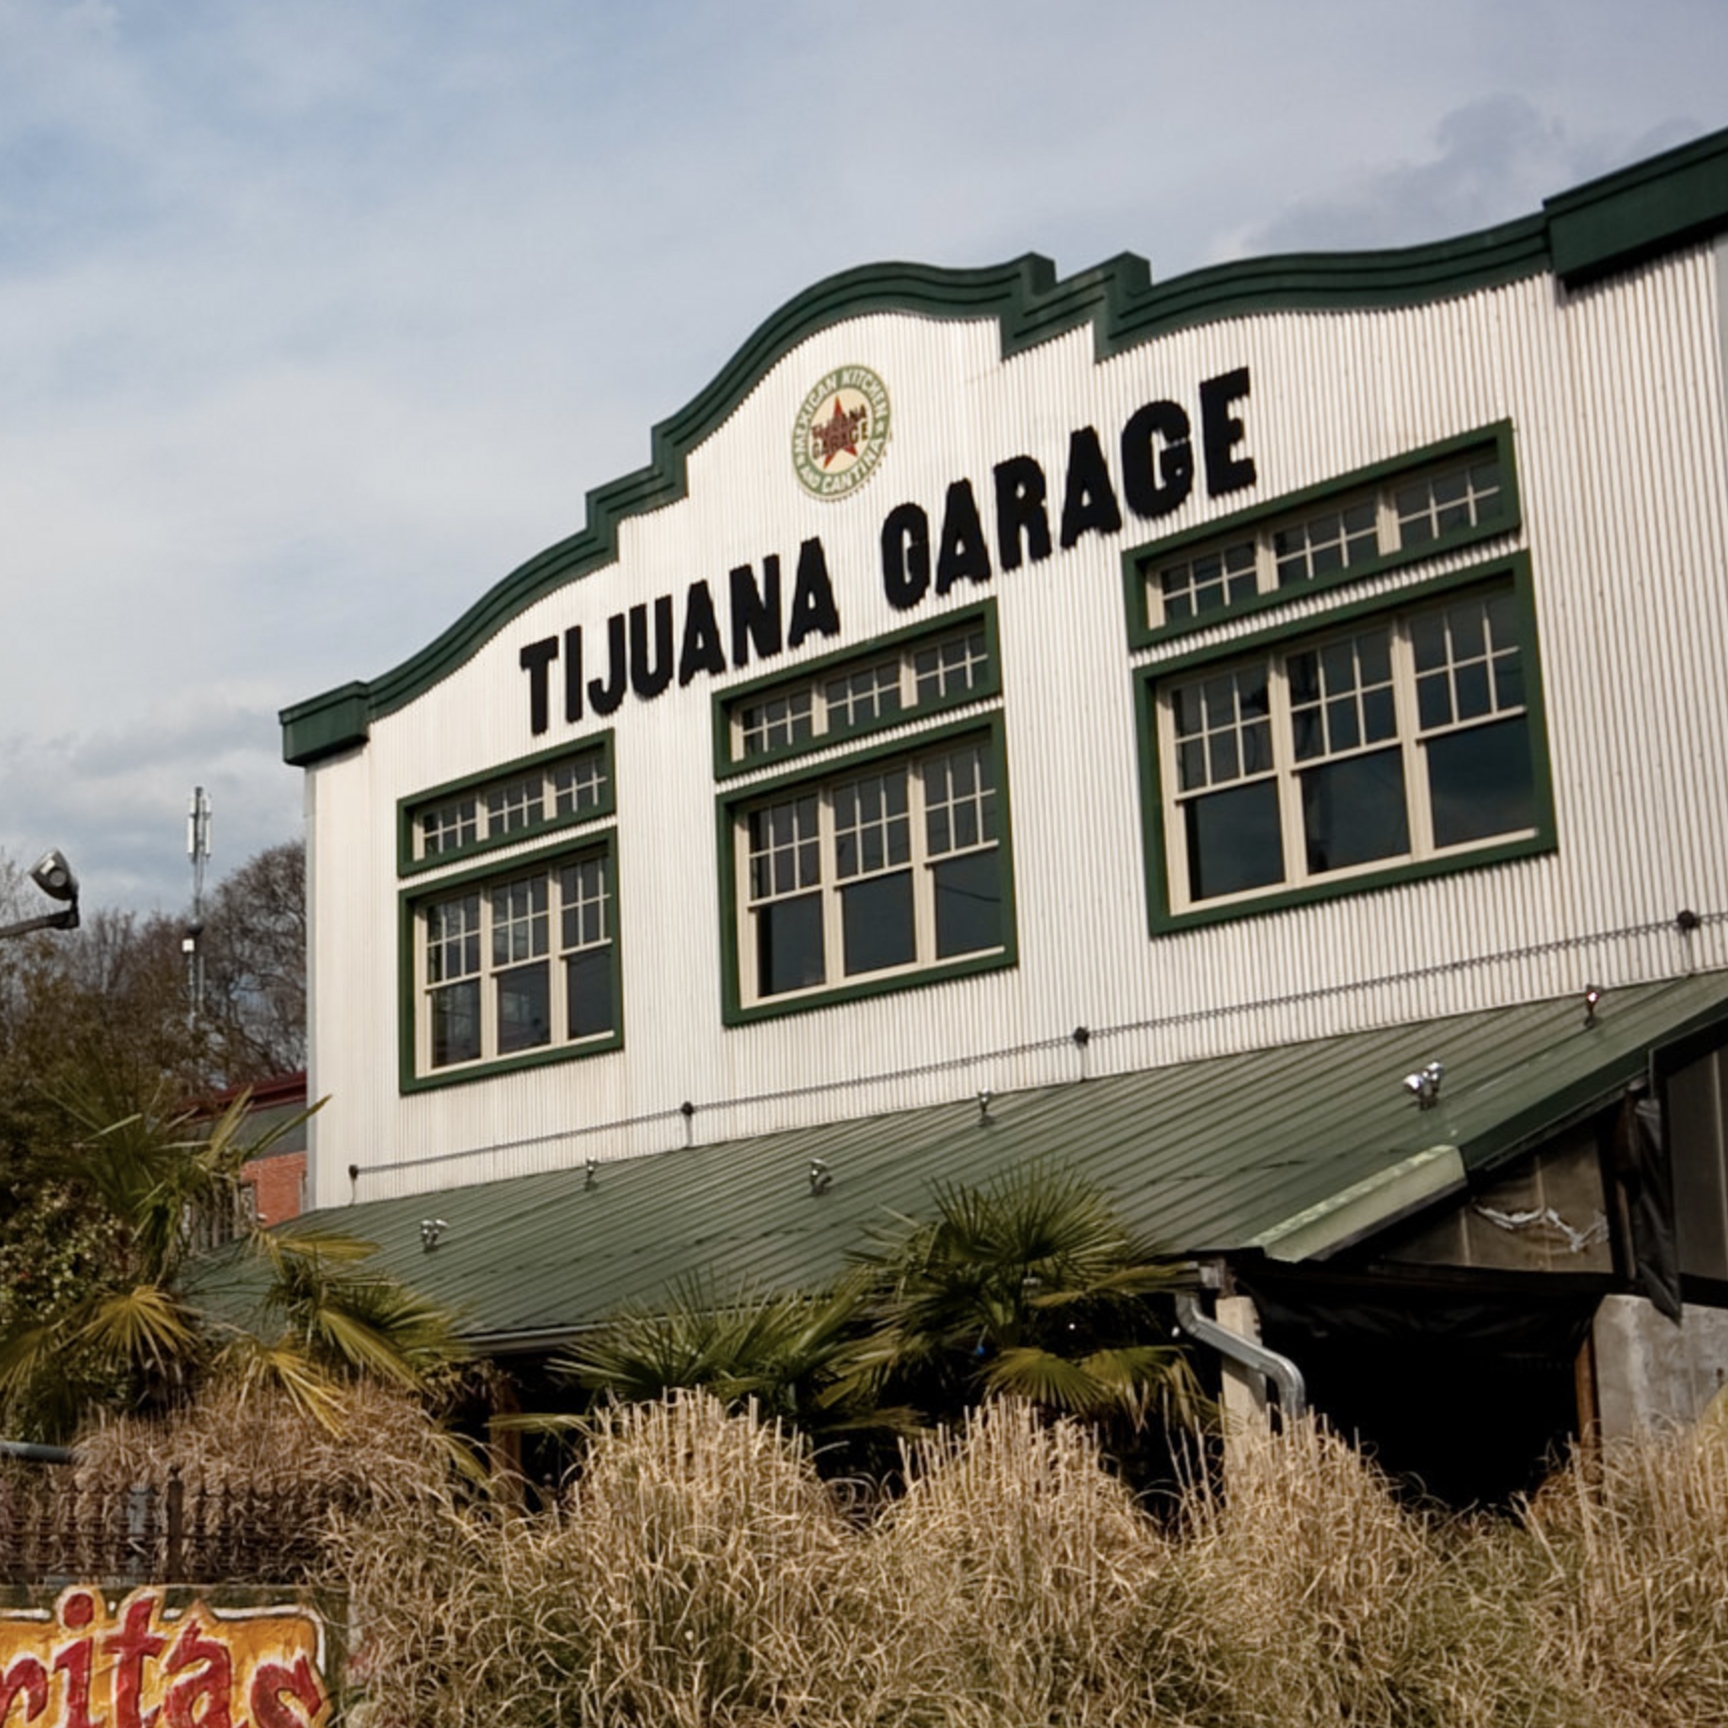 Tijuana Garage Restaurant Front